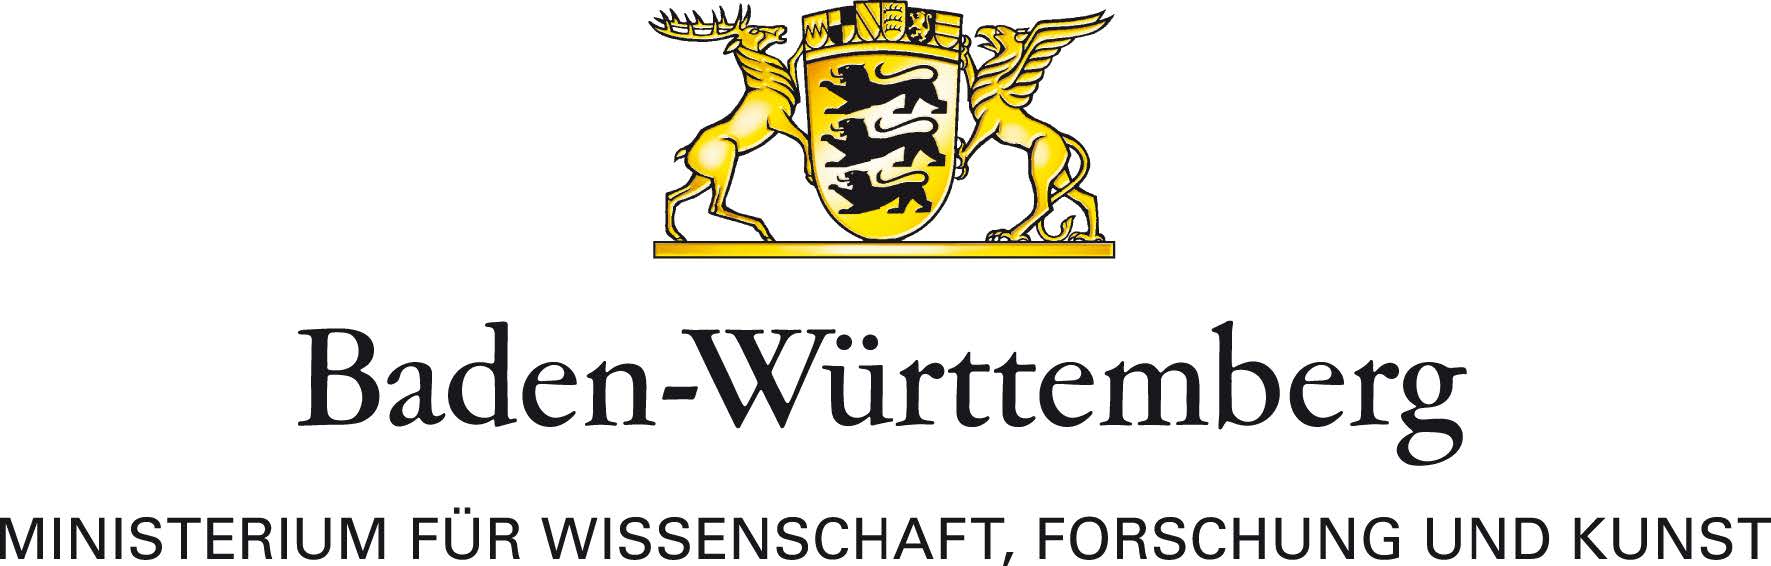 Das Logo des Baden-Württembergischen Ministeriums für Wissenschaft, Forschung und Kunst. Über dem Schriftzug prangt das große Landeswappen Baden-Württembergs.